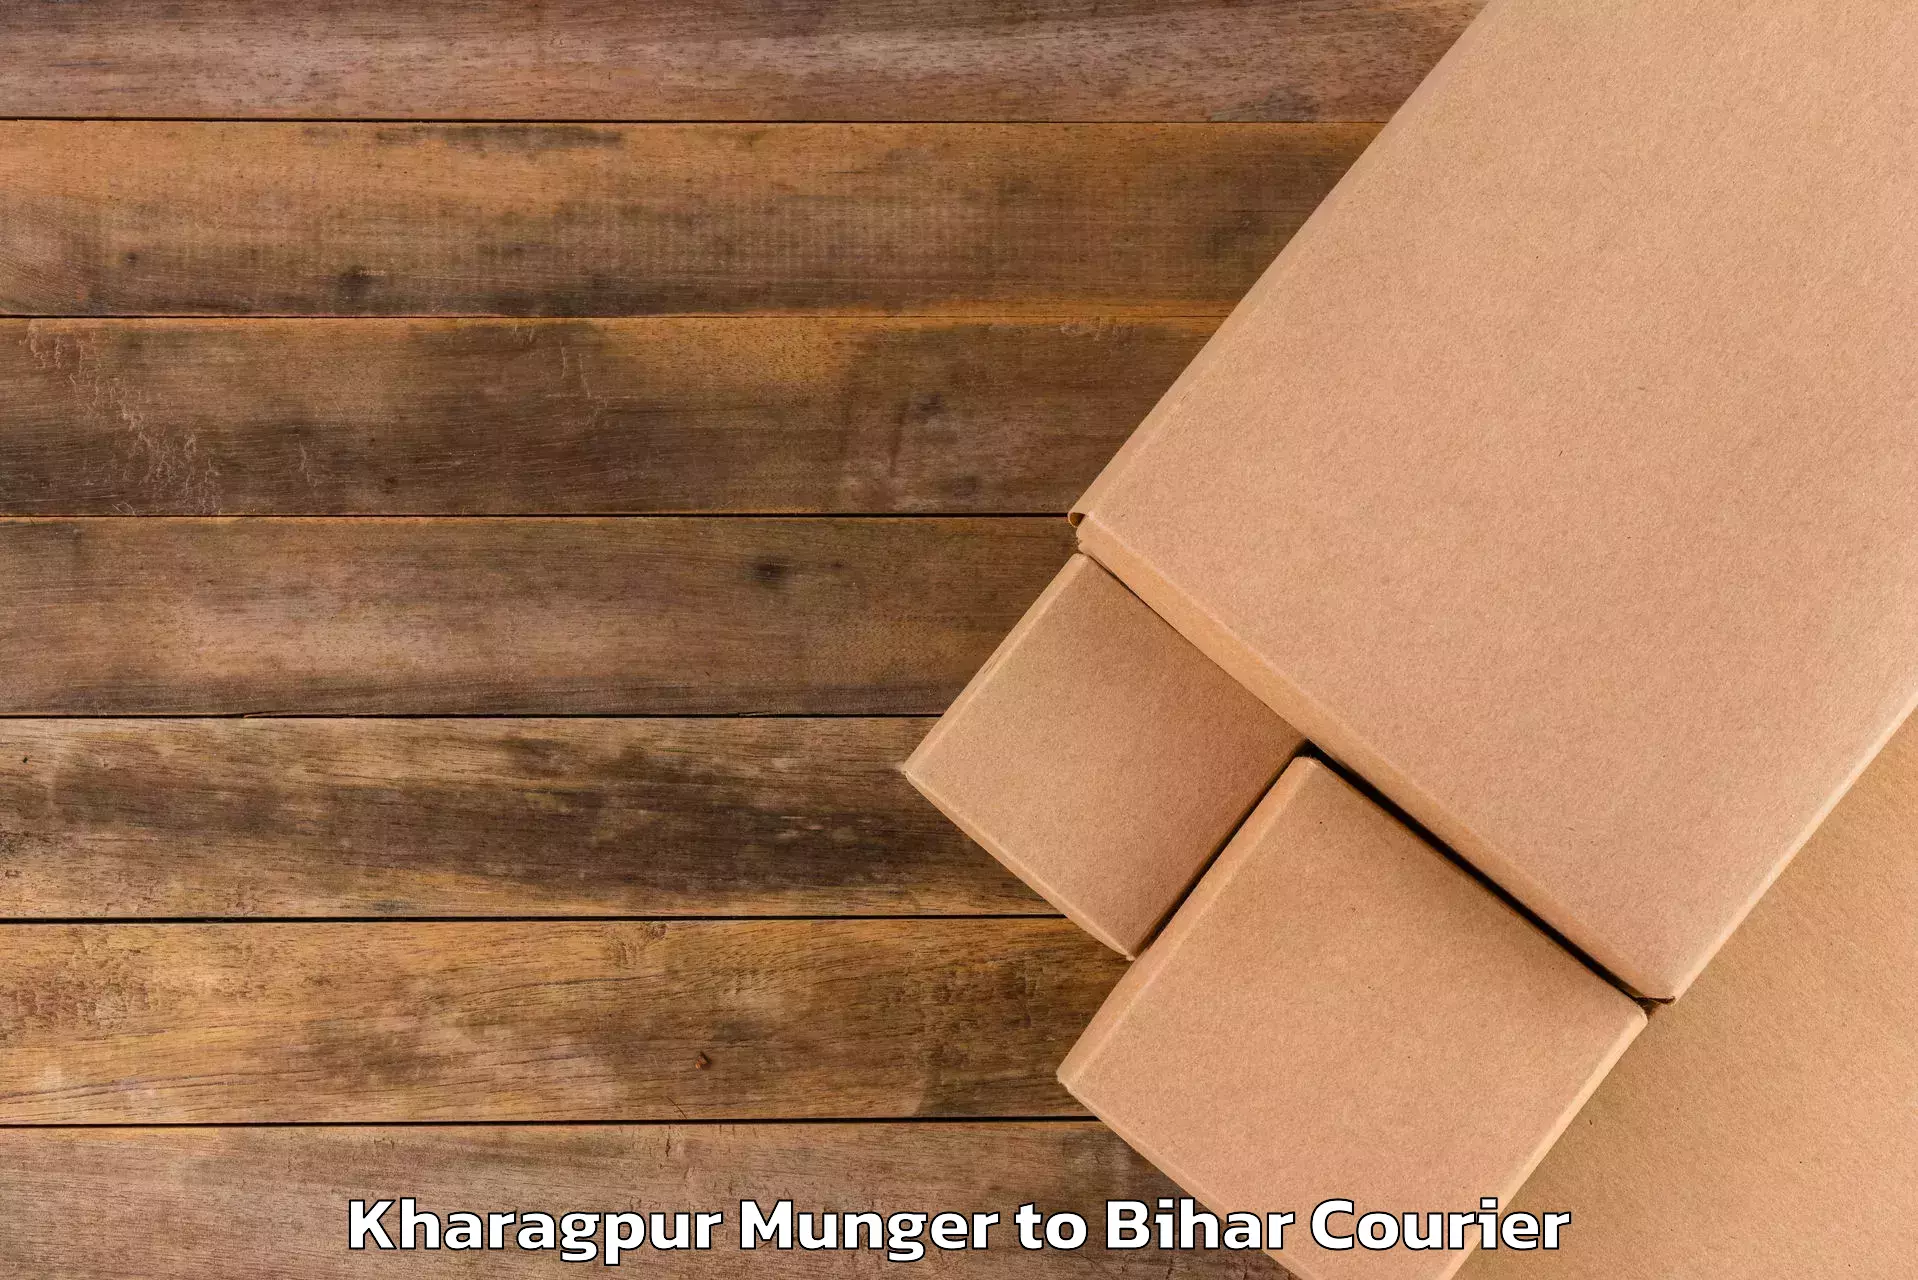 Global baggage shipping Kharagpur Munger to Kalyanpur Samastipur